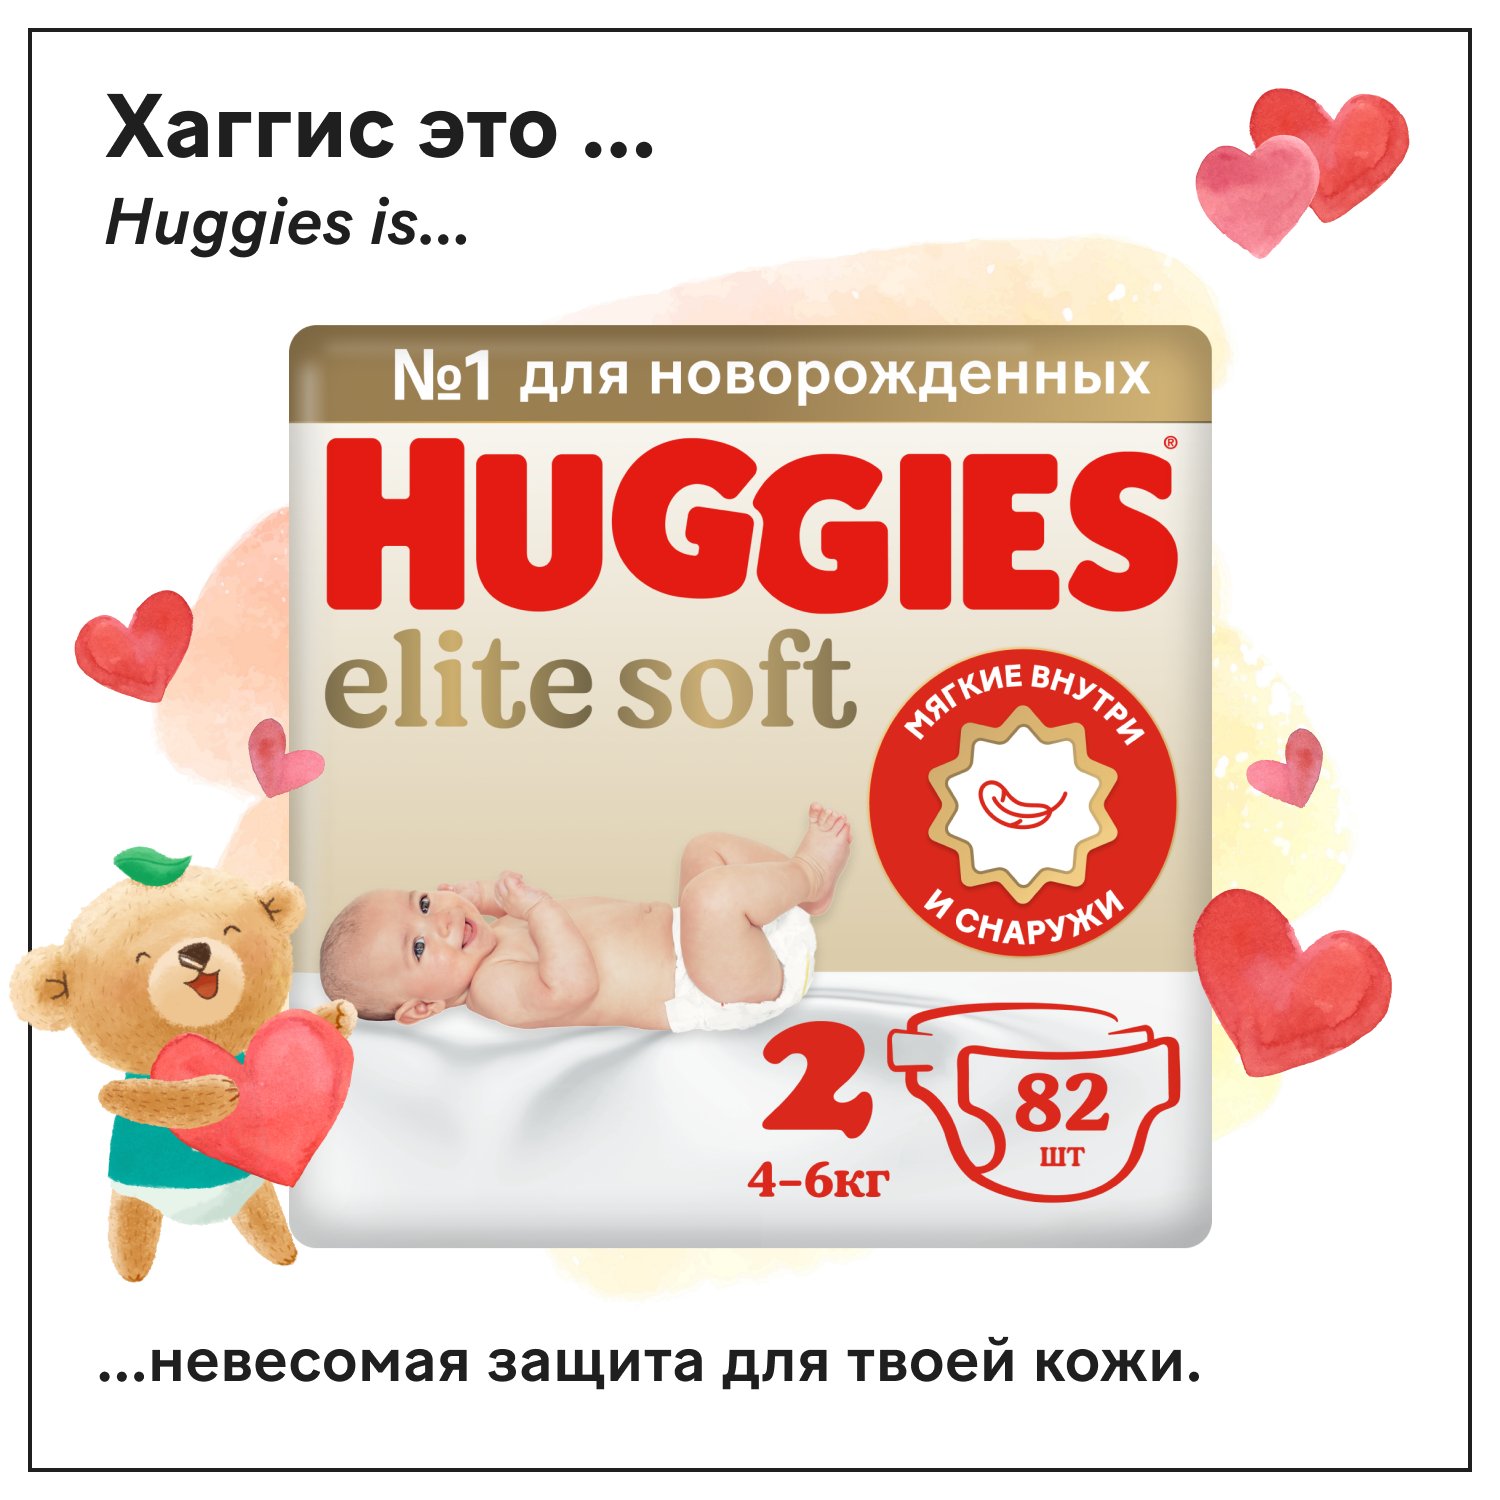 Подгузники Huggies Elite Soft для новорожденных 2 4-6кг 82шт - фото 1